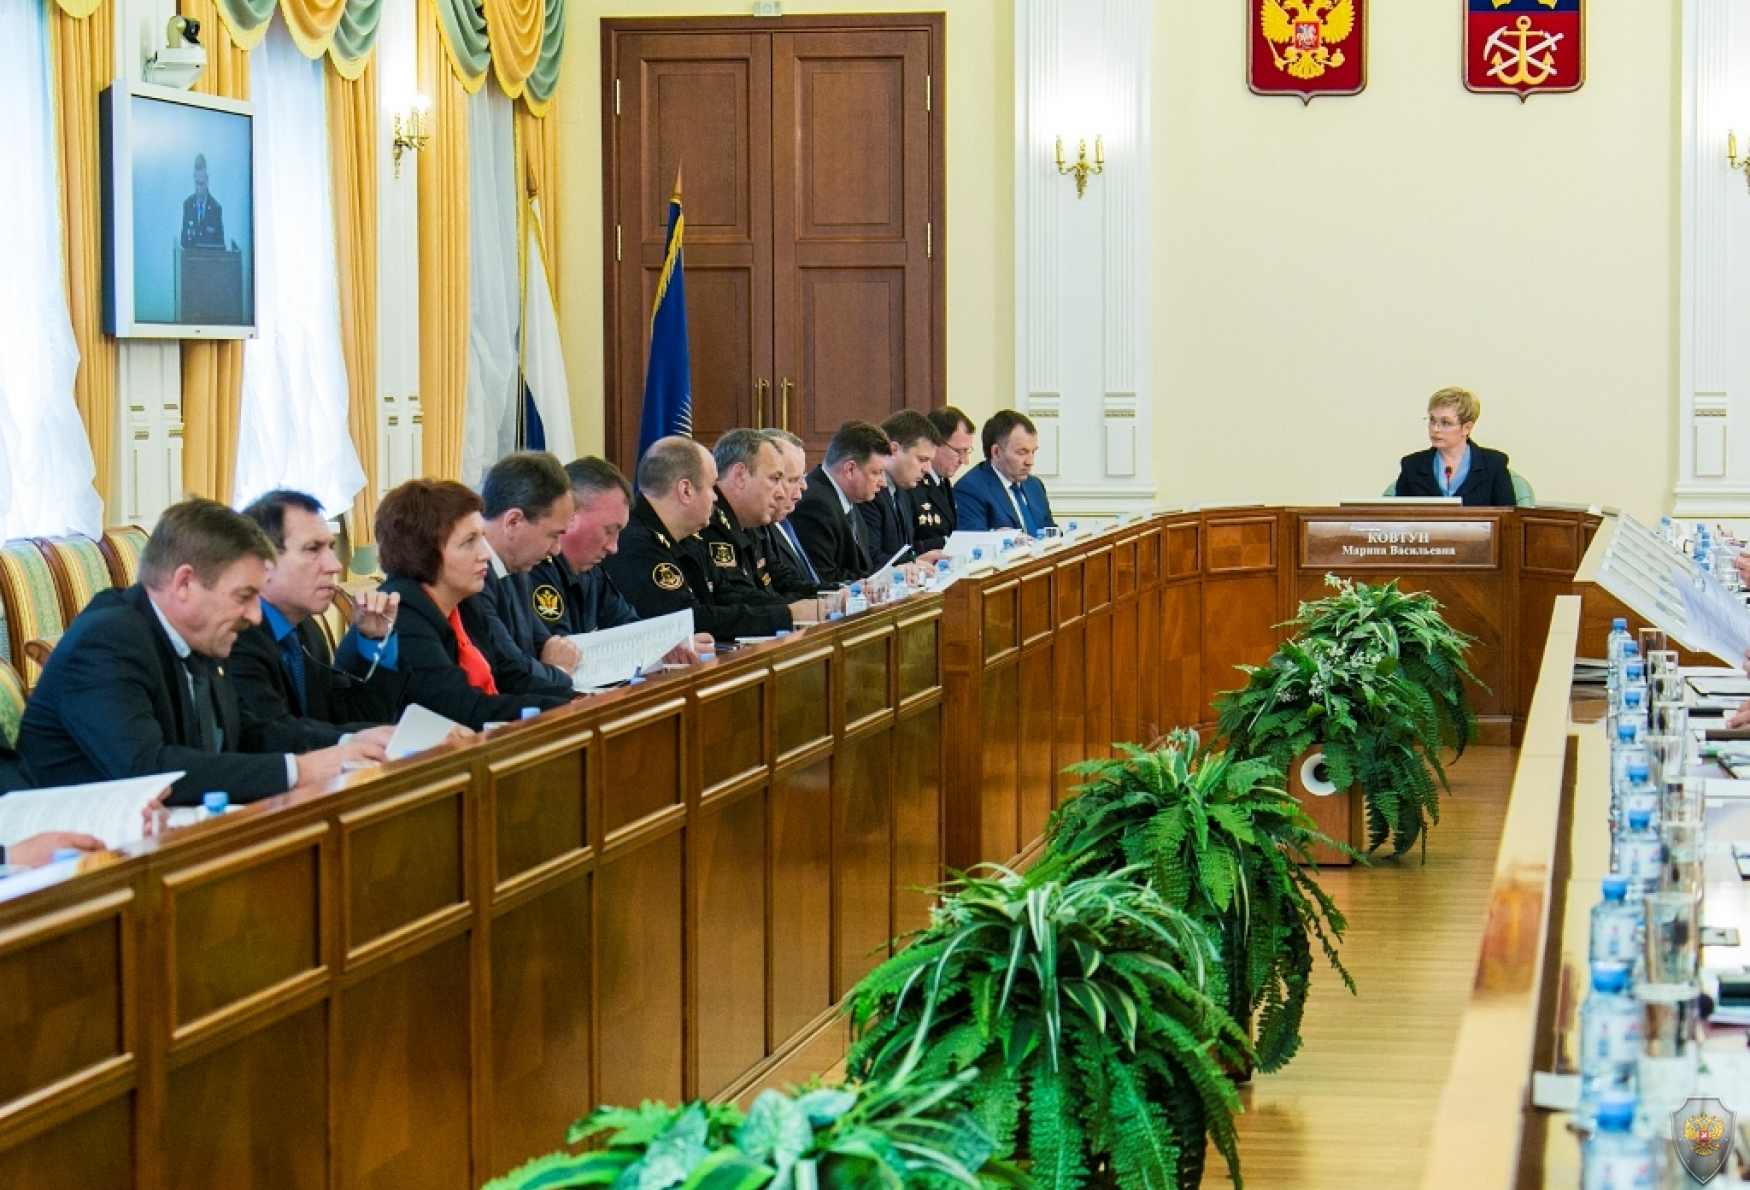 Губернатор Марина Ковтун провела совместное заседание антитеррористической комиссии и оперативного штаба в Мурманской области